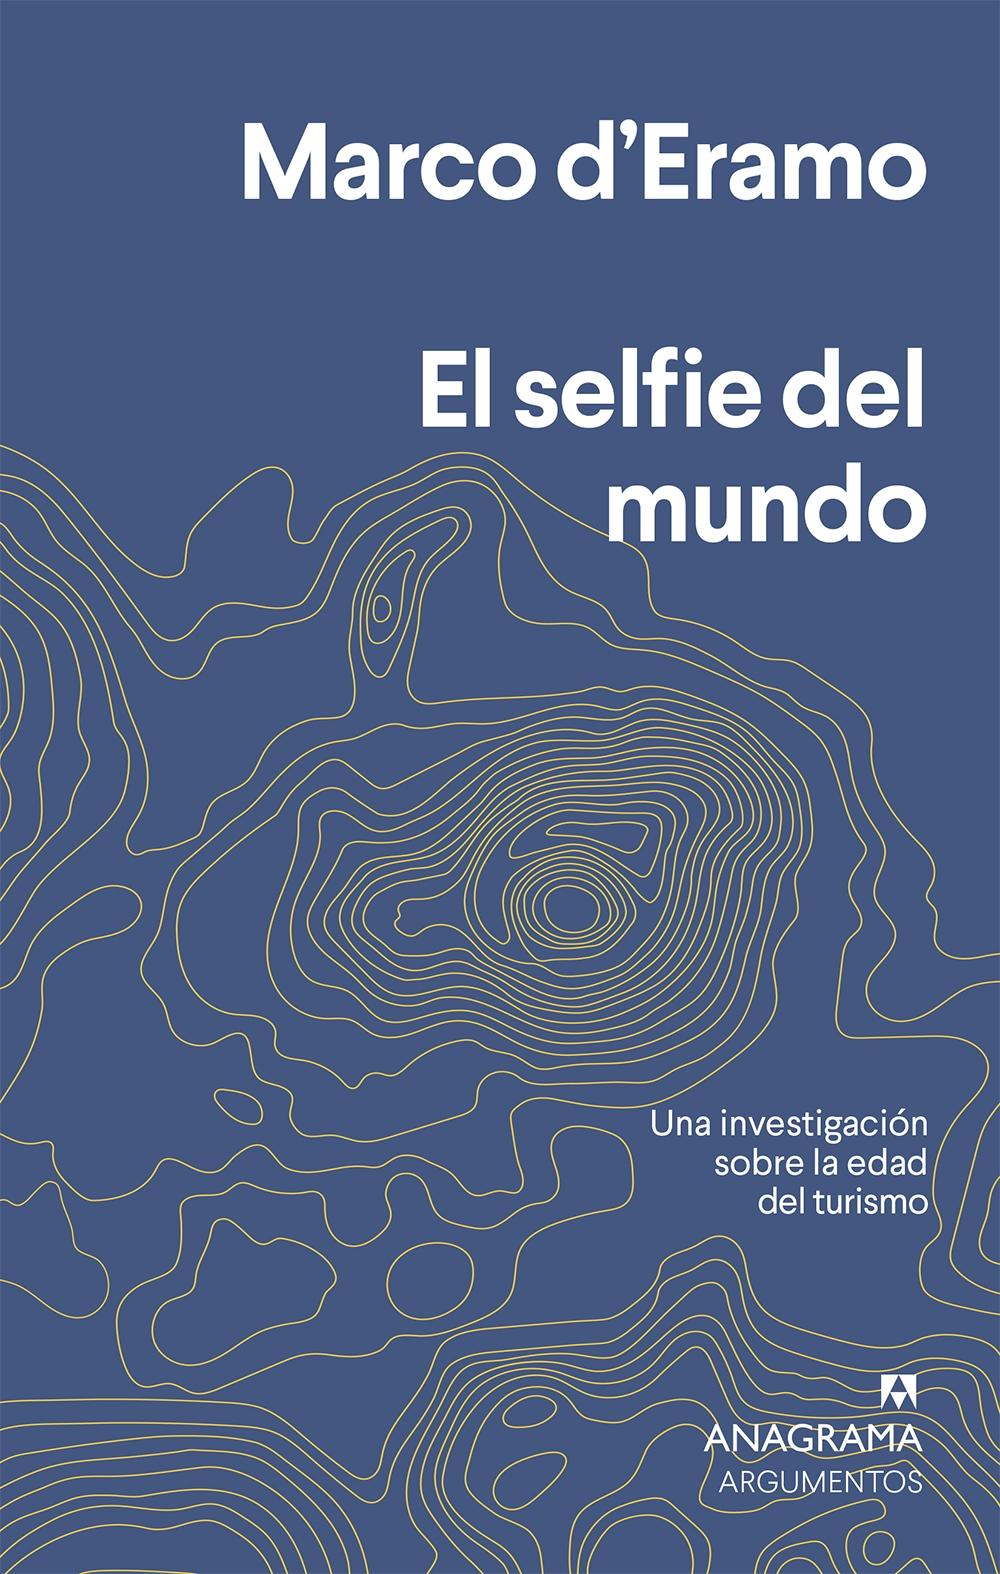 El selfie del mundo "Una investigación sobre la era del turismo"